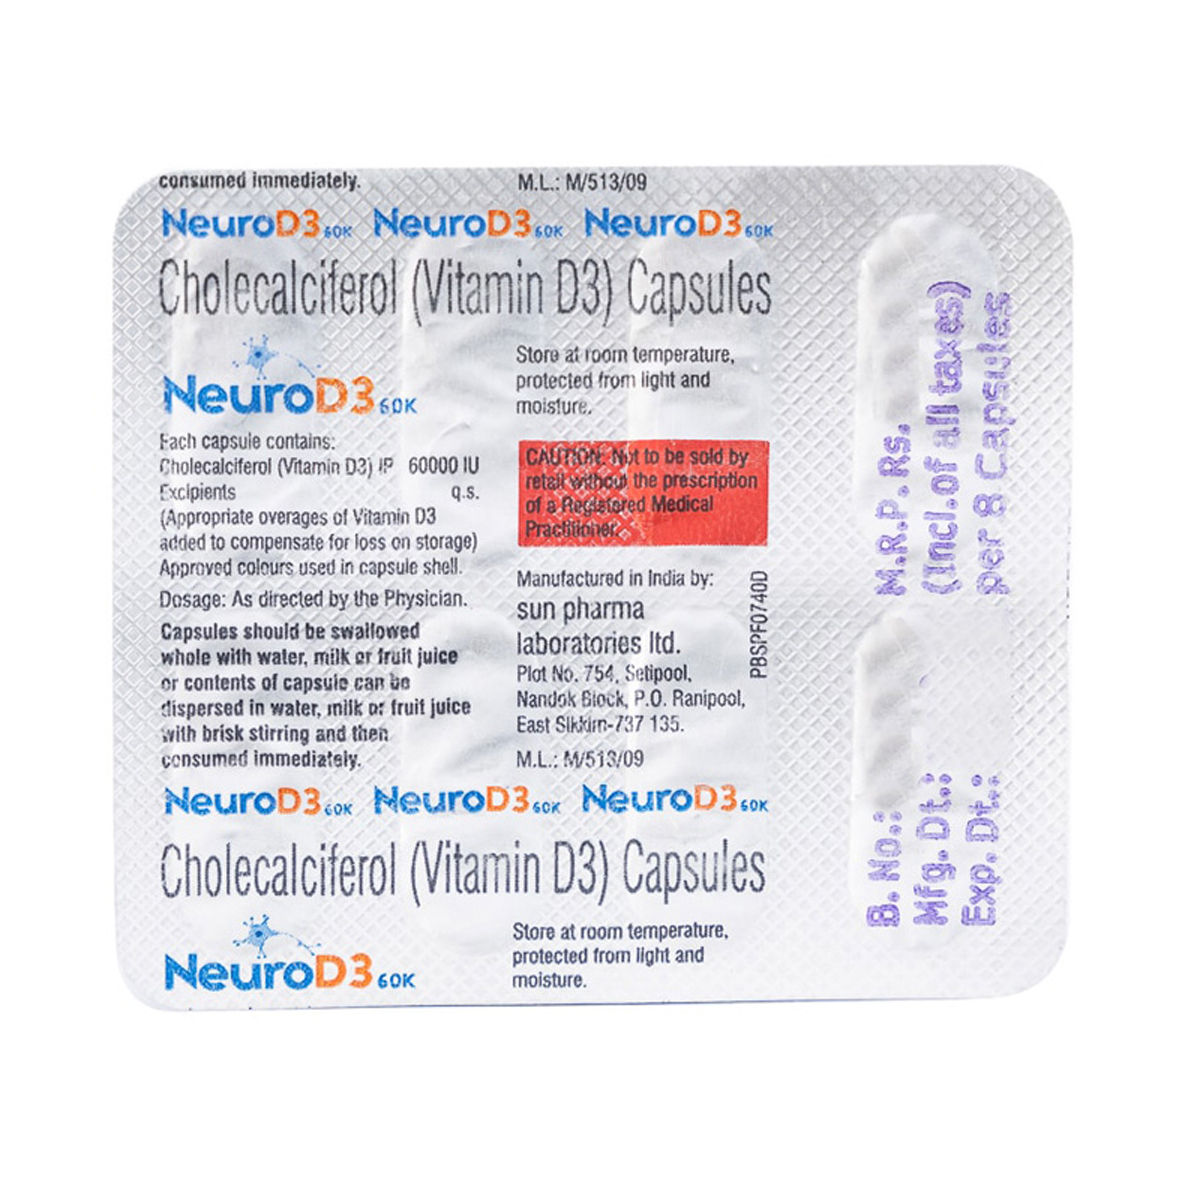 Buy Neurod3 60K Capsule 4's Online